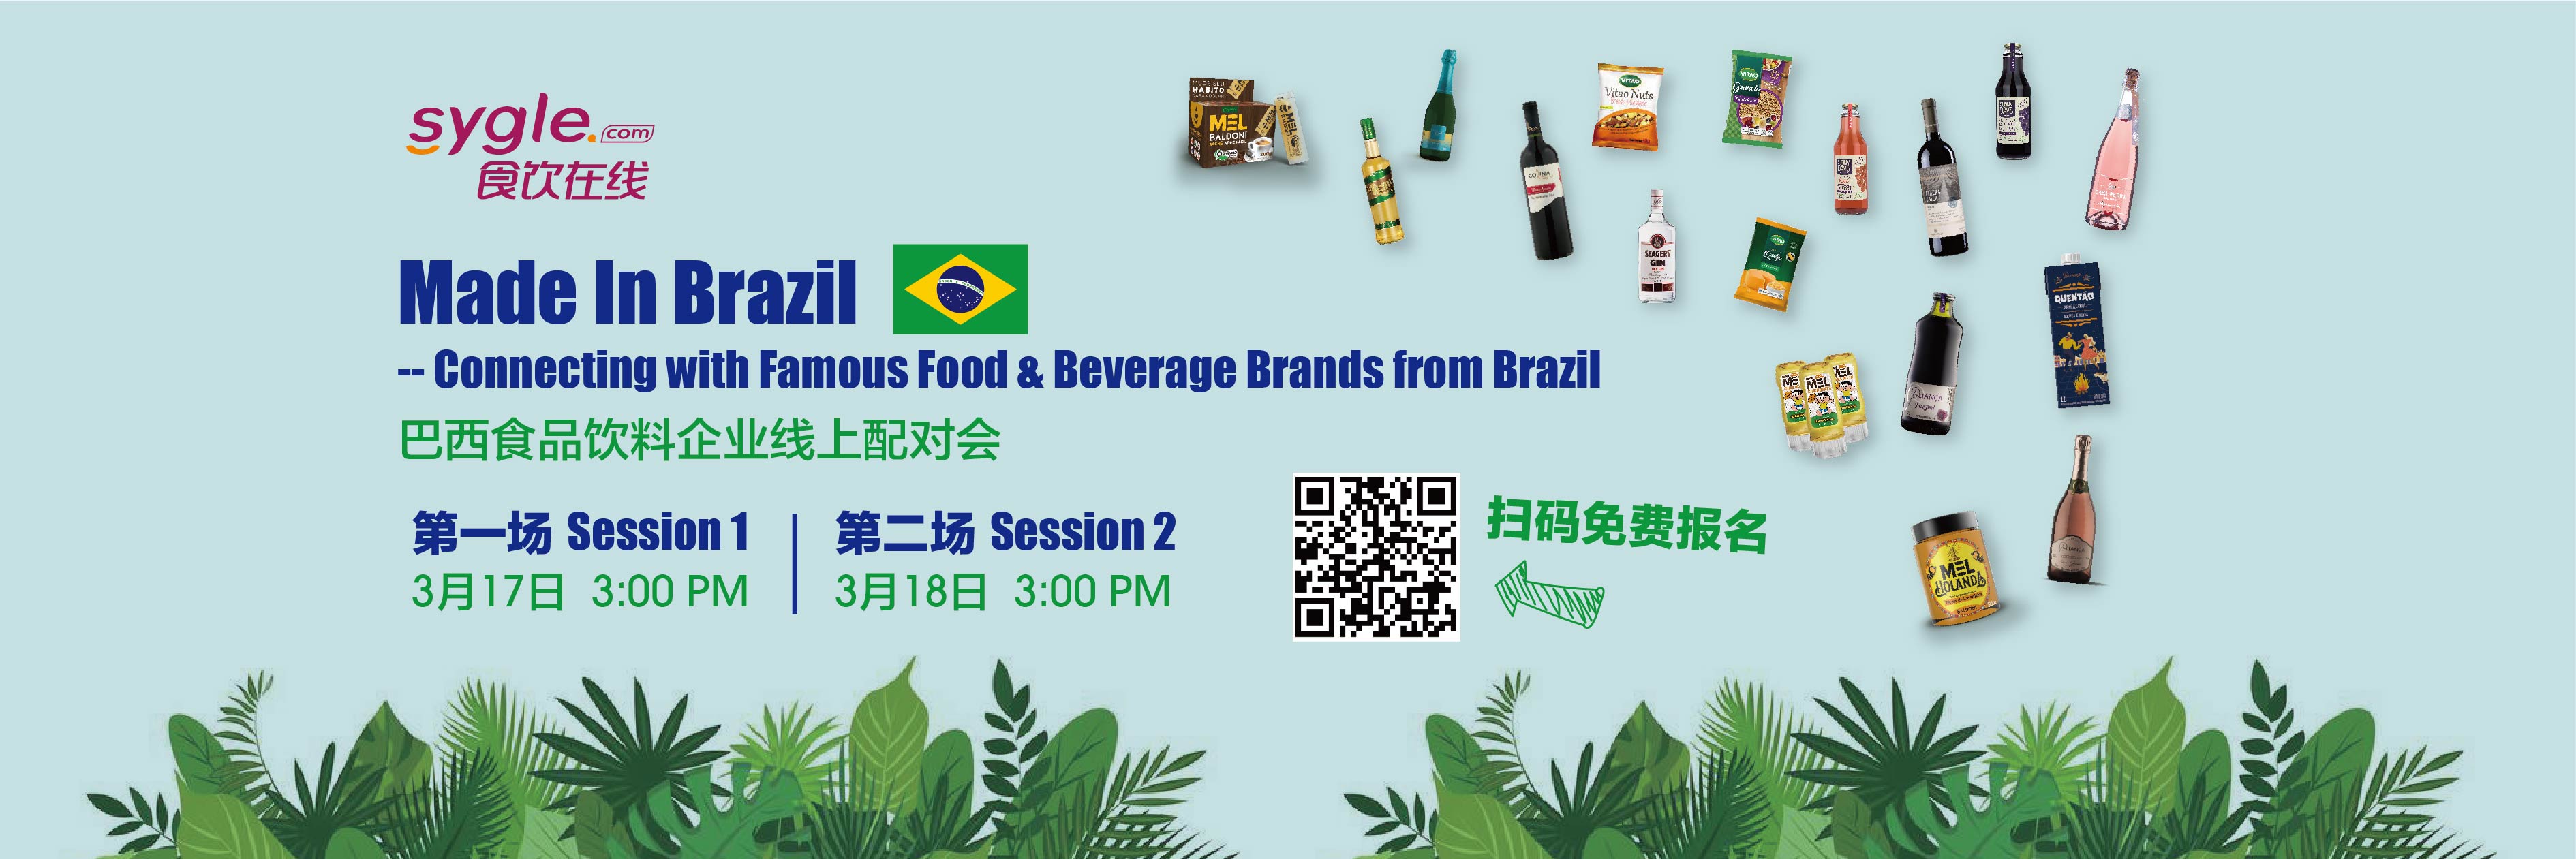 SYgle食饮在线——巴西食品饮料企业线上配对会